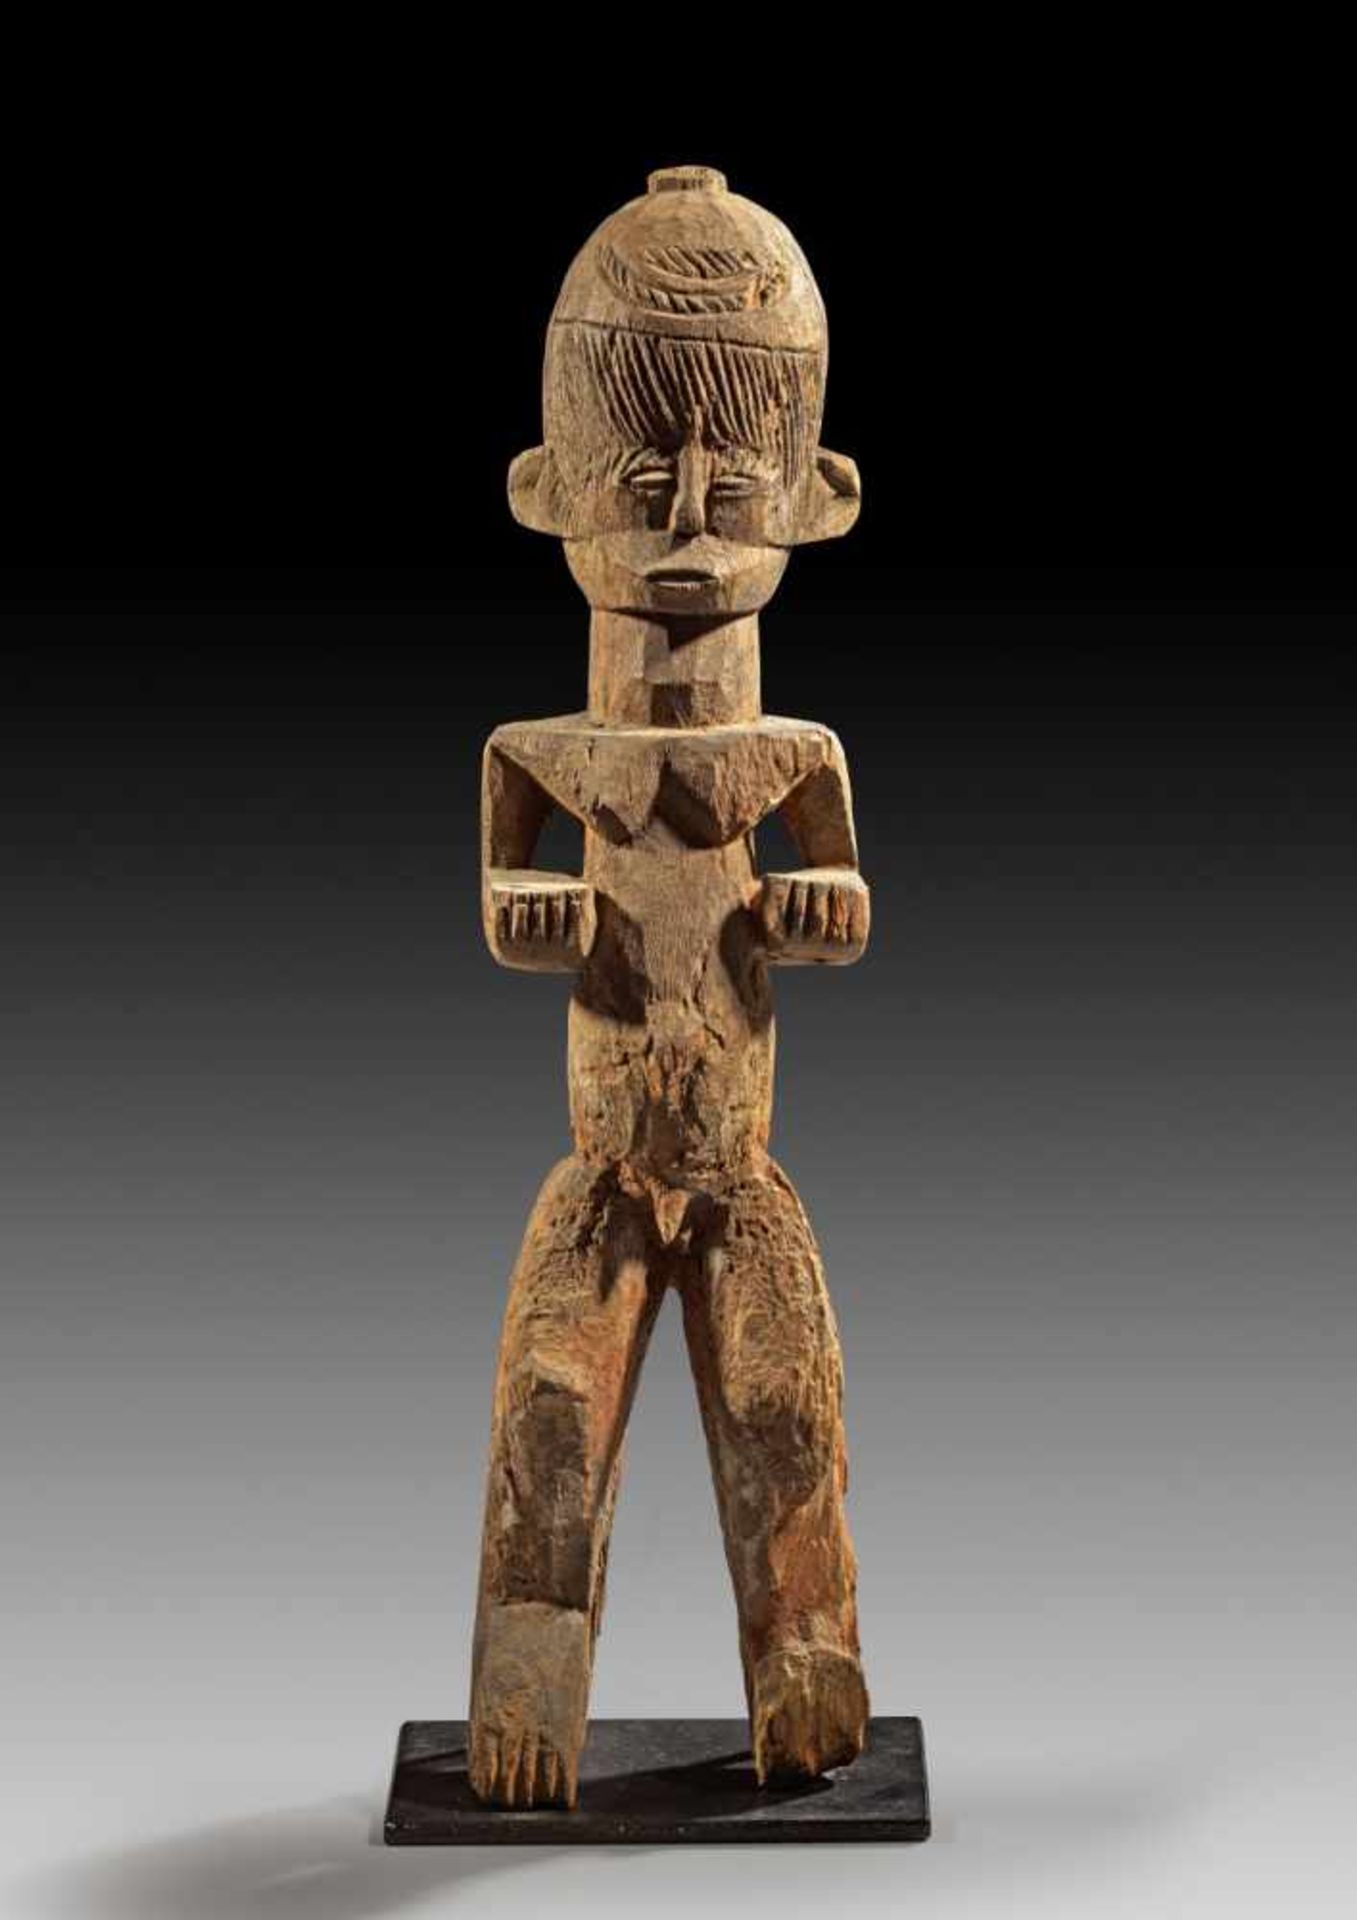 Männliche Götterfigur und bekleidete Zwillingsfigur. a) H 57,5cm. Holz. Stehende männliche